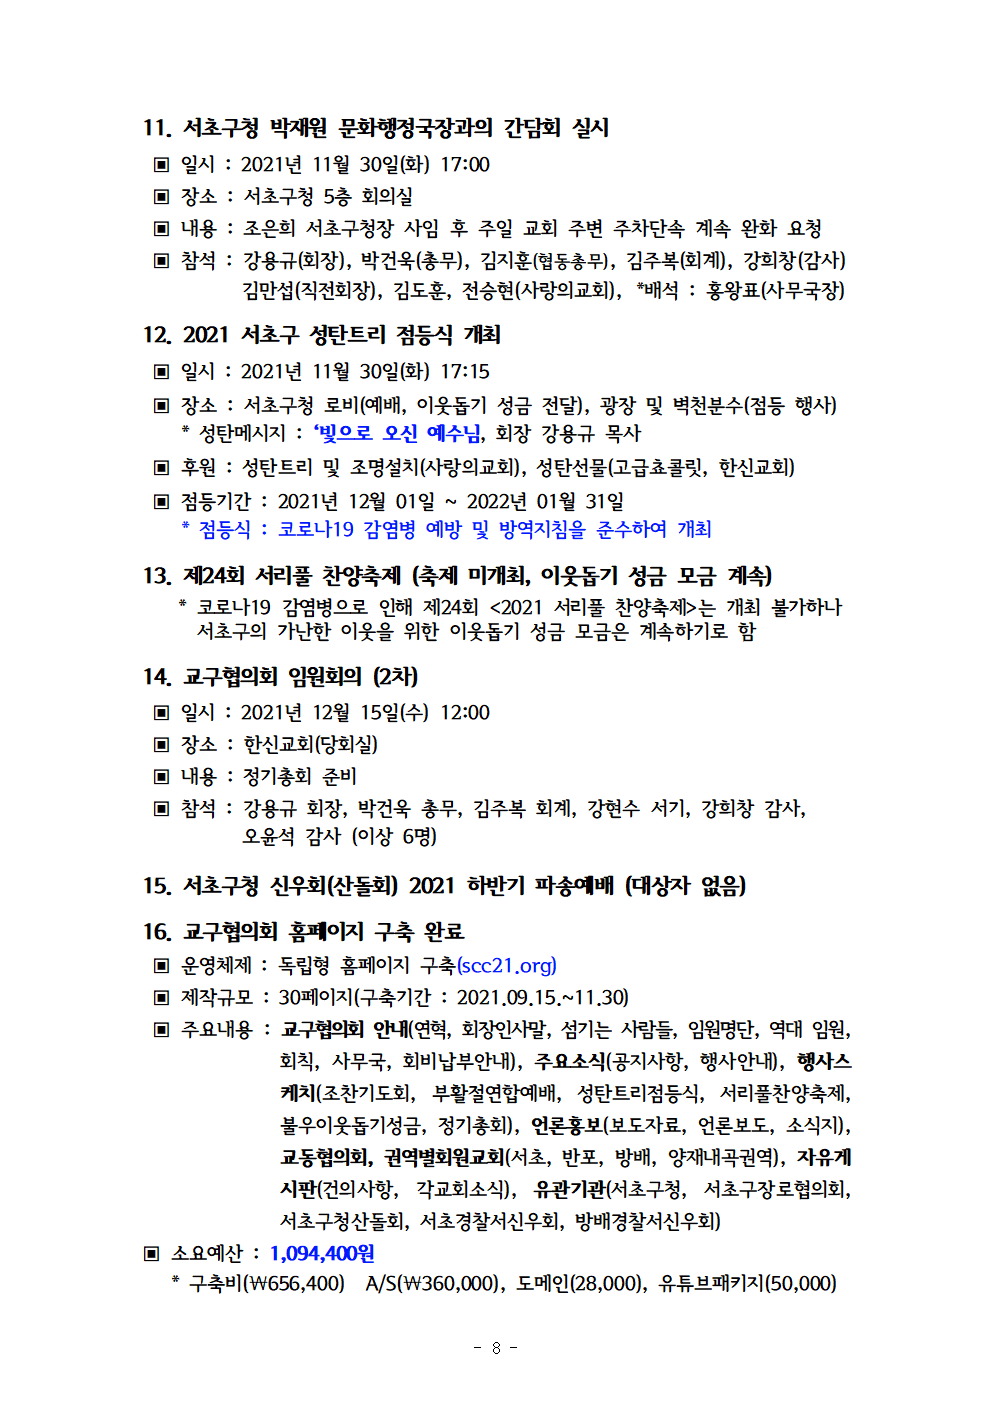 2021회기 서초교구협의회 정기총회자료(12.17)_홈피용009.png